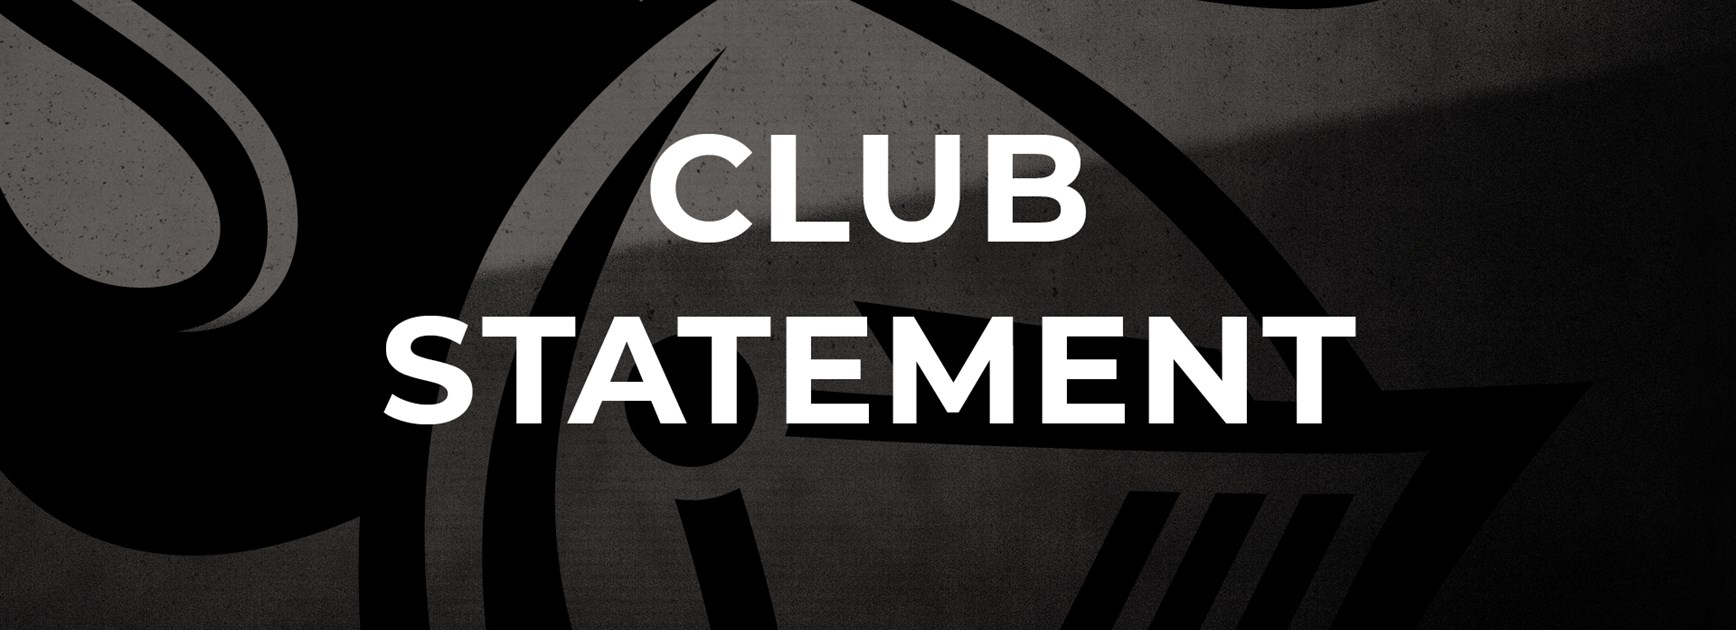 Club statement